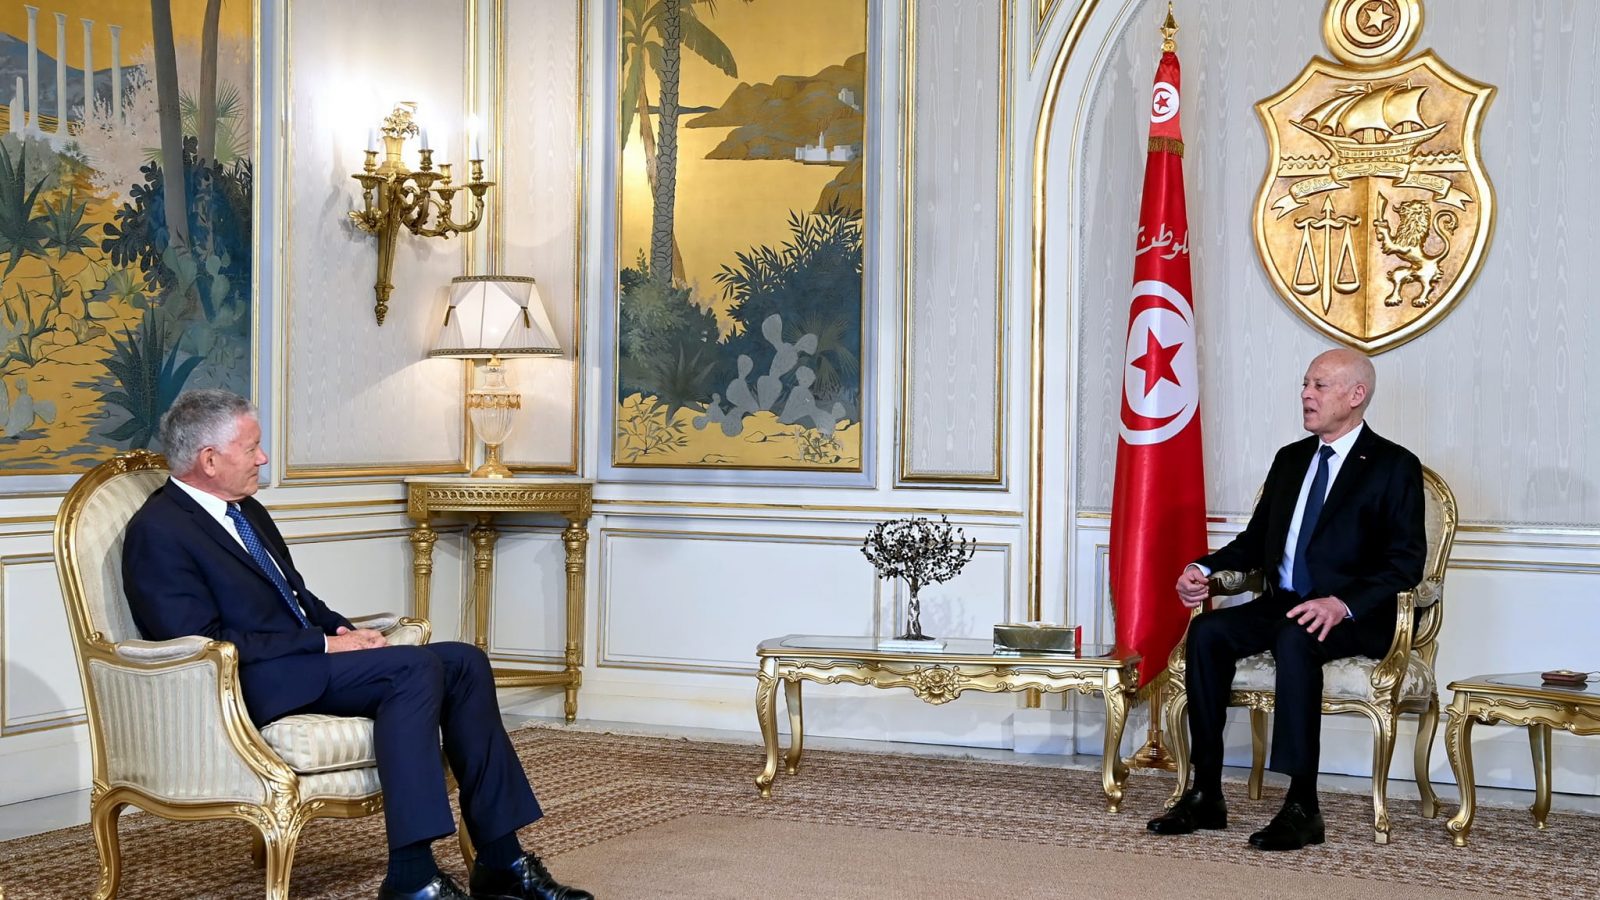 بمناسبة انتهاء مهامه/ رئيس الدولة يلتقي بسفير فرنسا (فيديو)